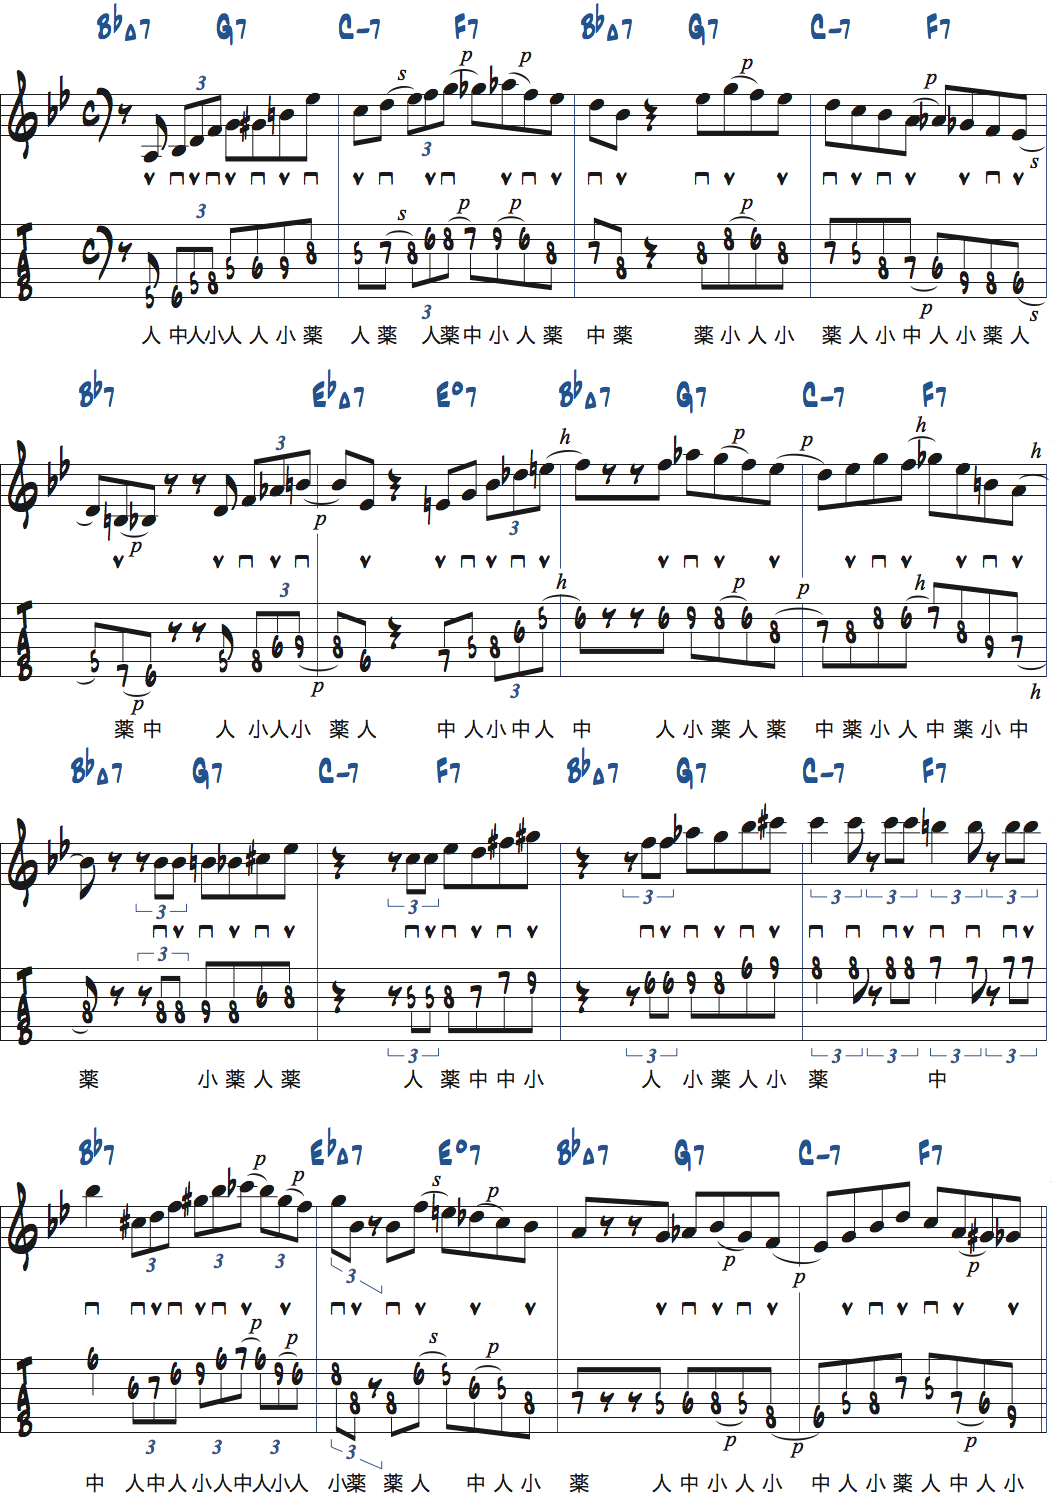 リズムチェンジ[A]セクションBPM120でのアドリブ例楽譜